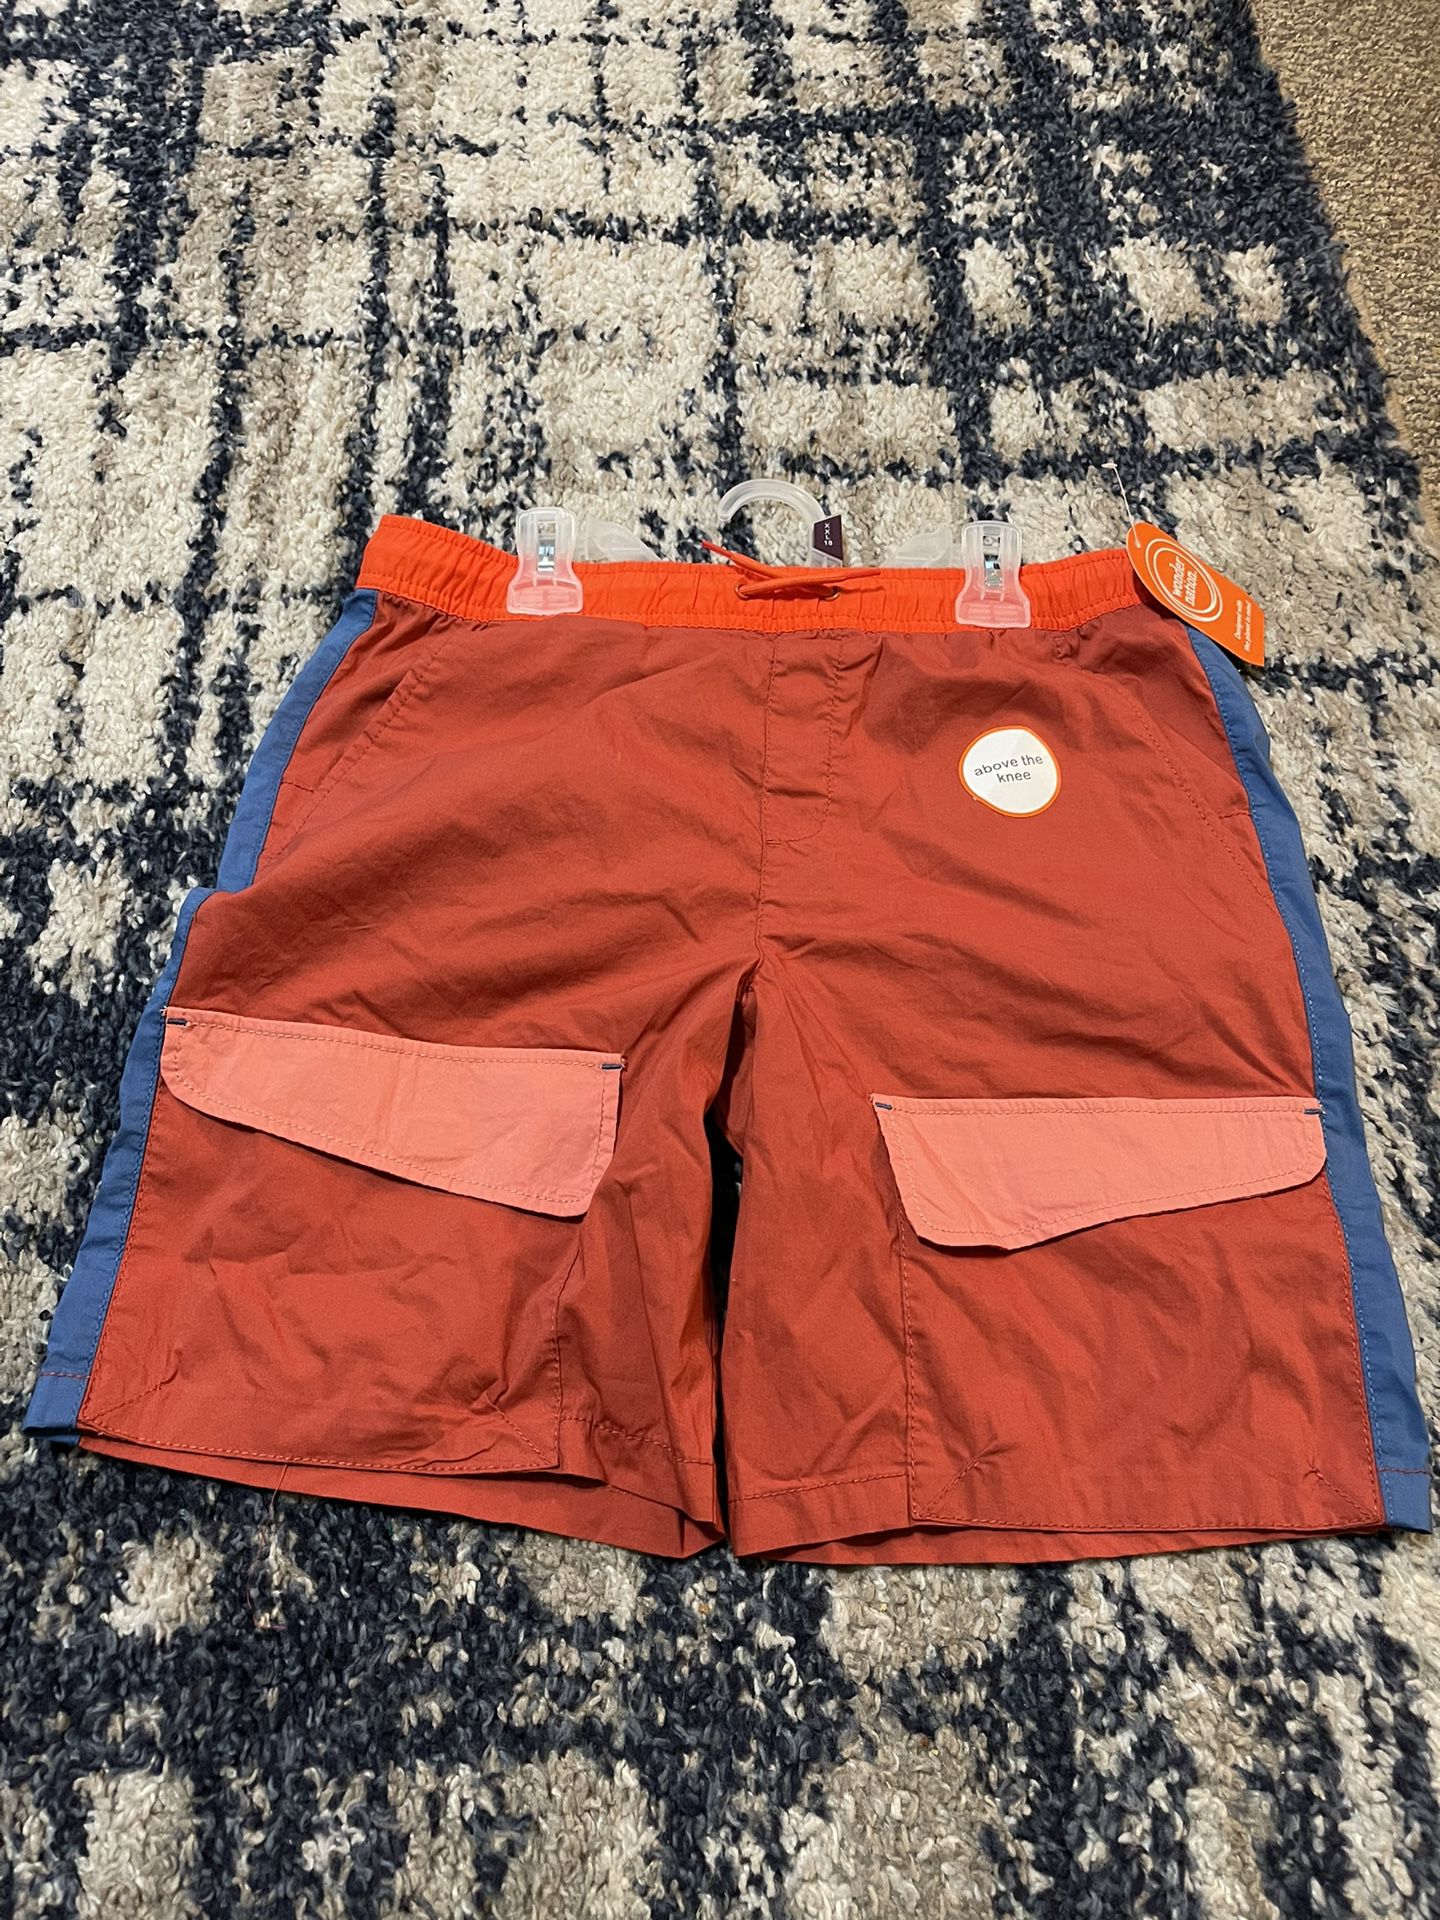 Boys shorts size xxl(18)